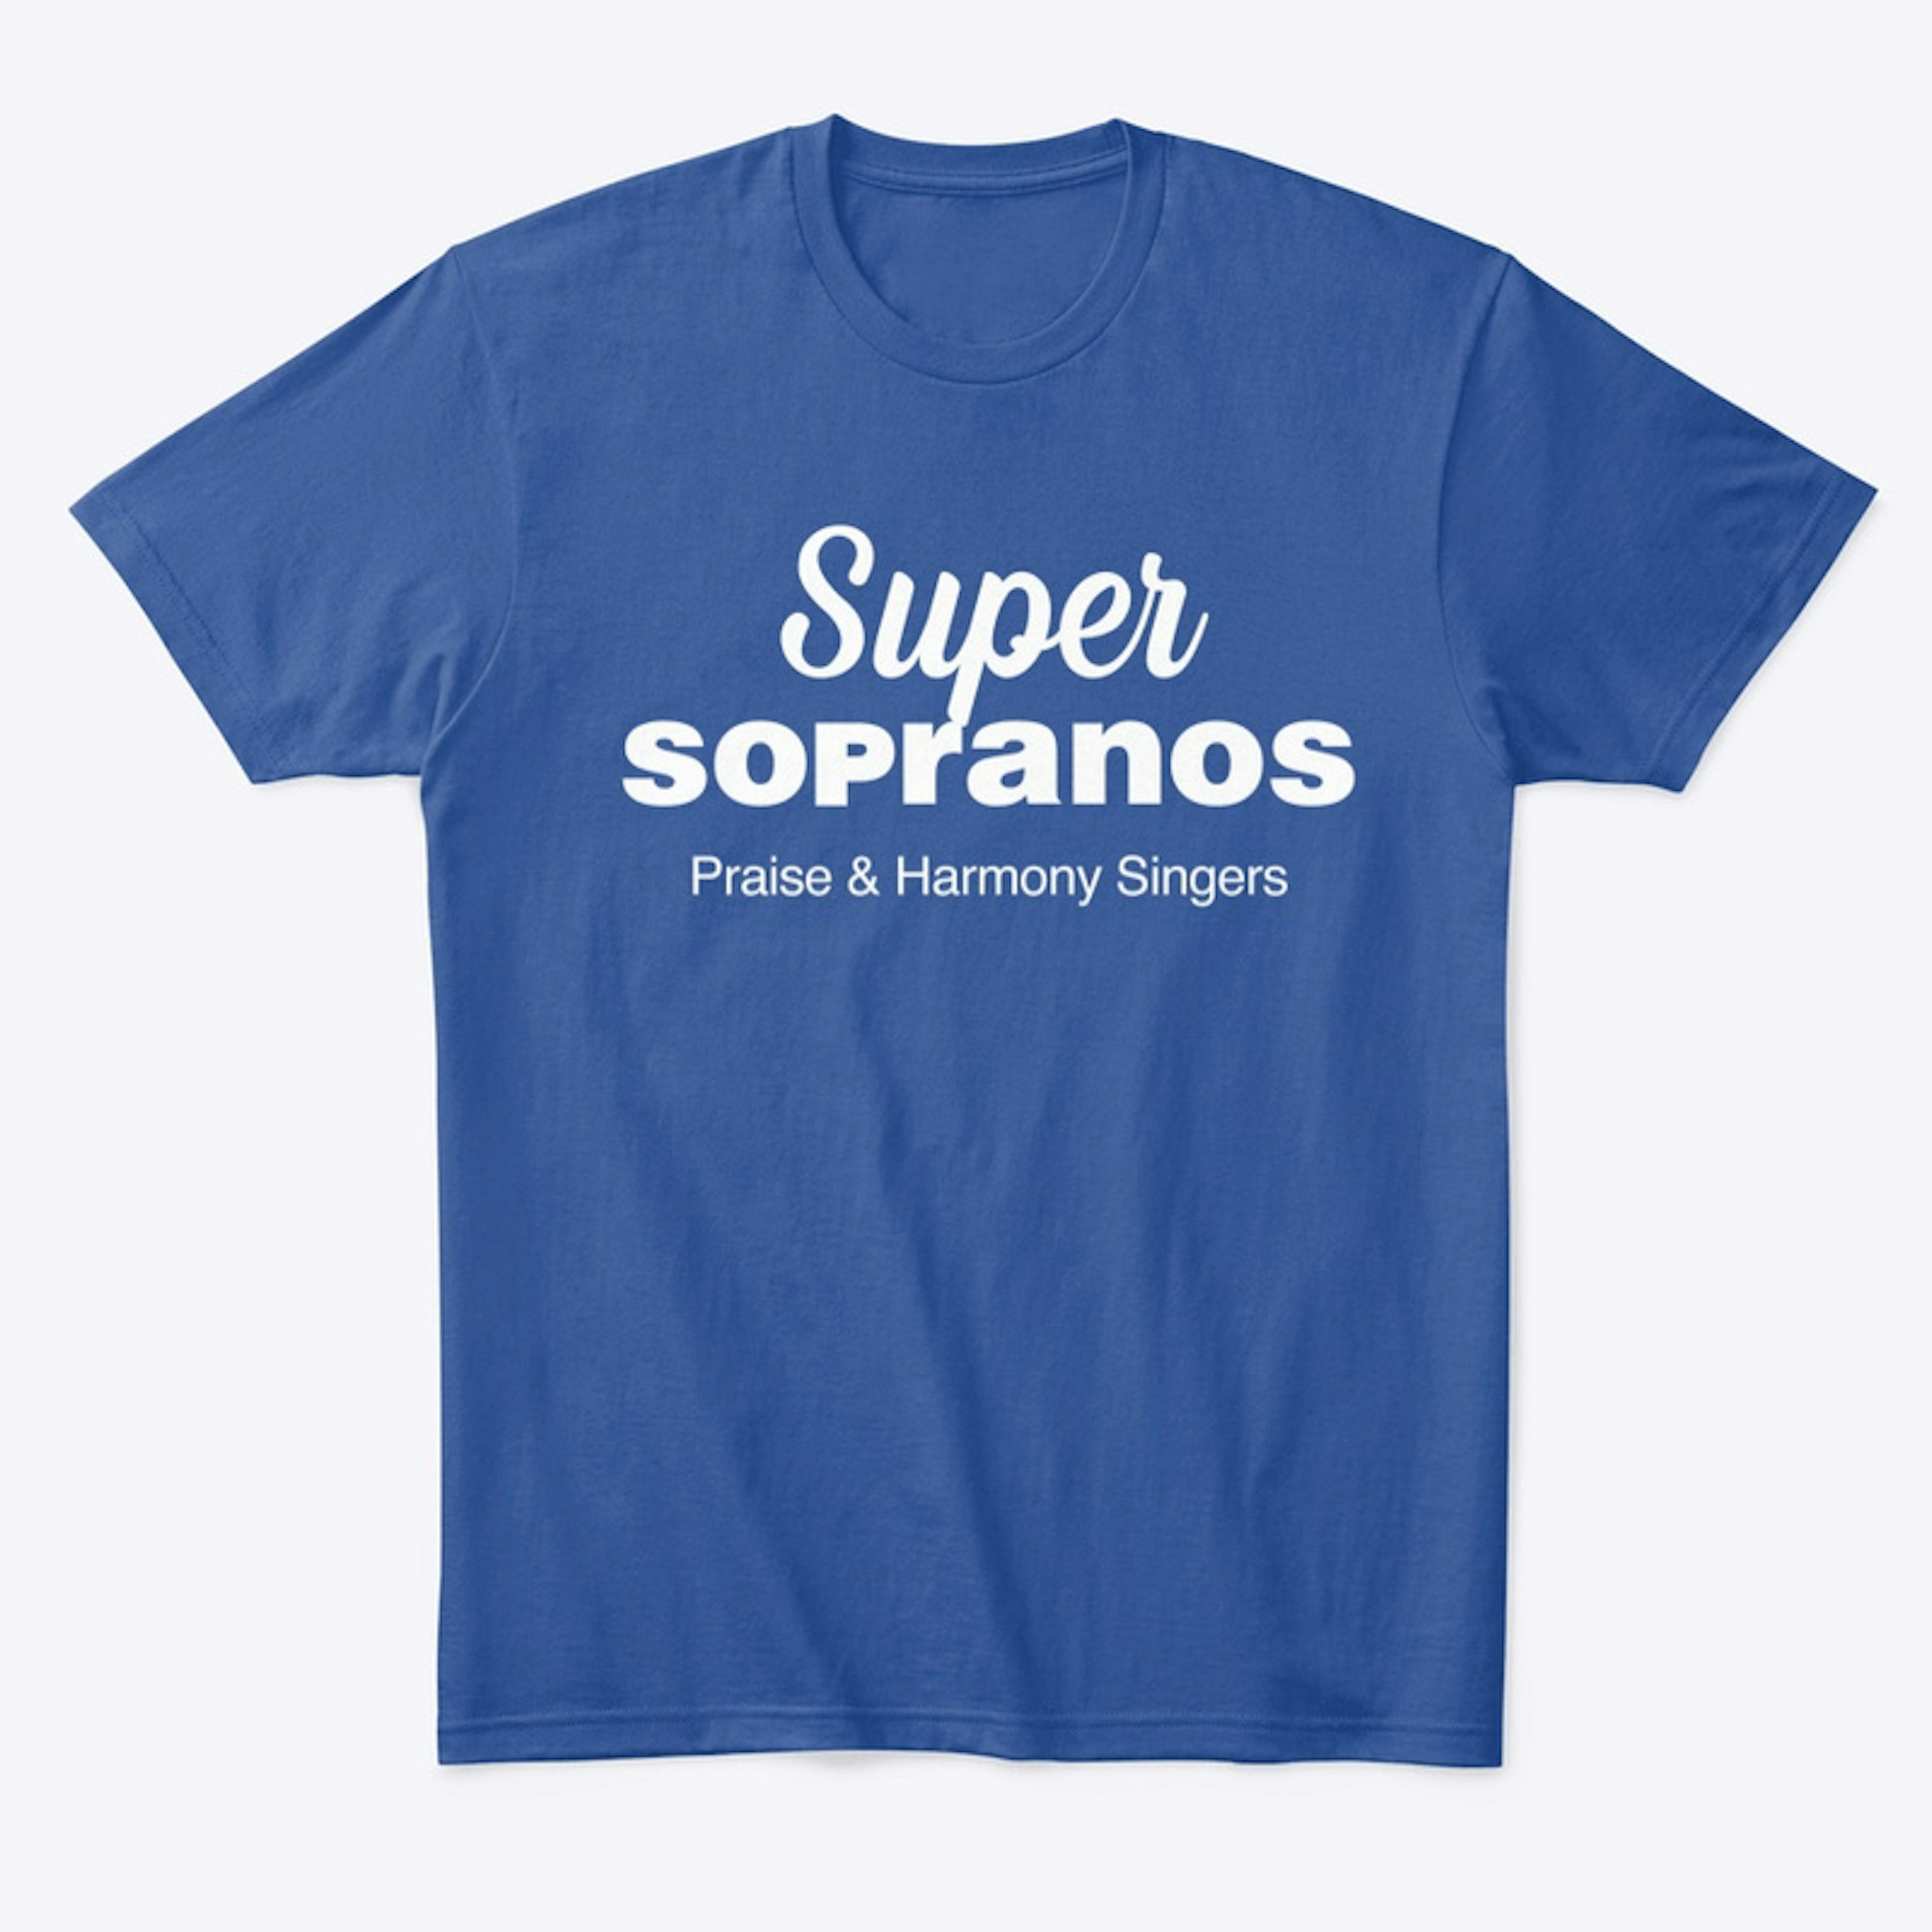 Super Sopranos